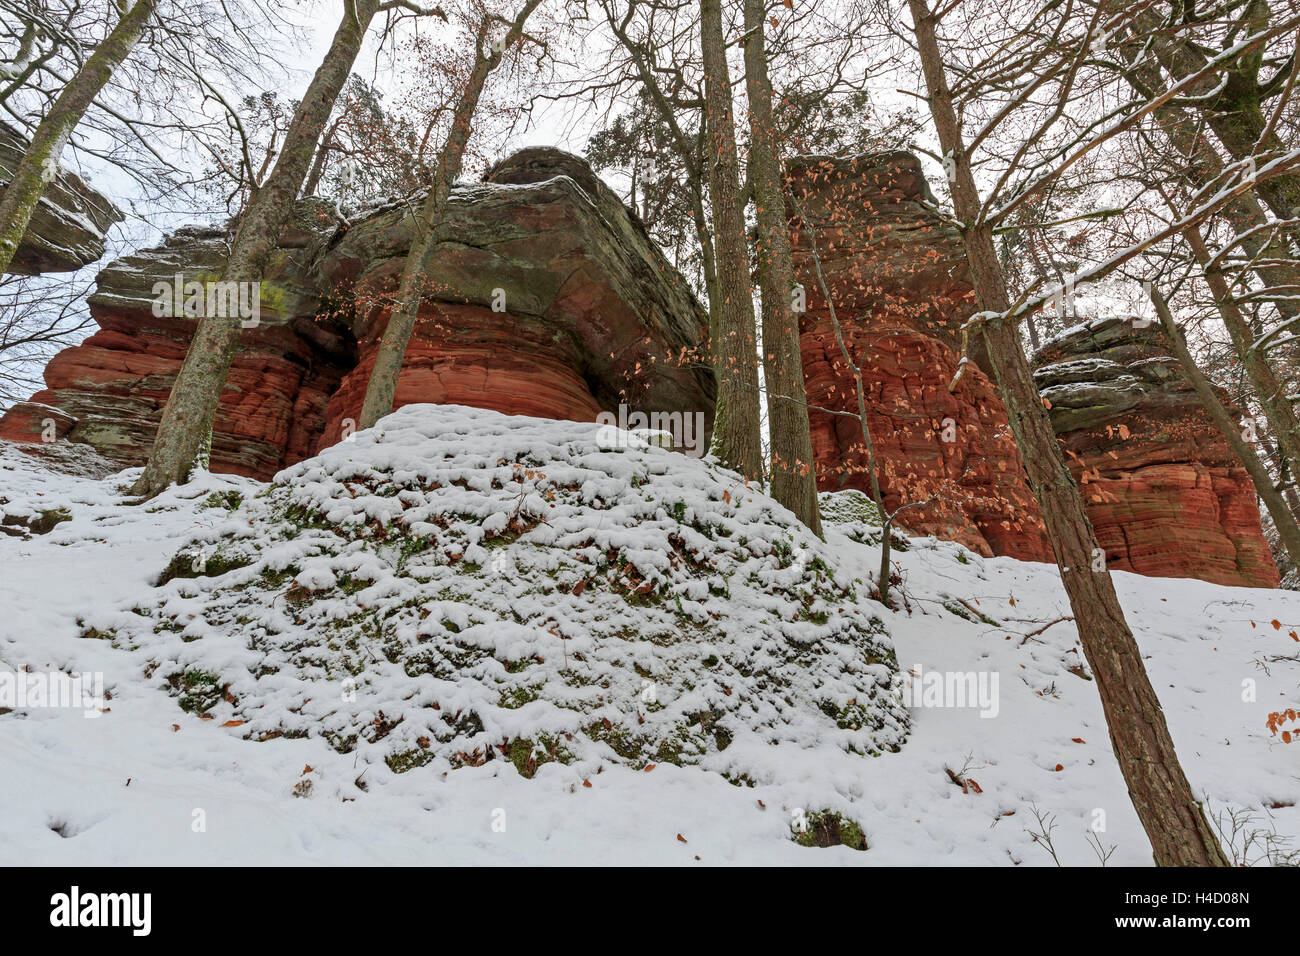 Monumento Naturale, inverno, 'Altschlossfelsen' (vecchio castello rocce), Foresta del Palatinato, Eppenbrunn, Rhinland Palatinato, Germania Foto Stock